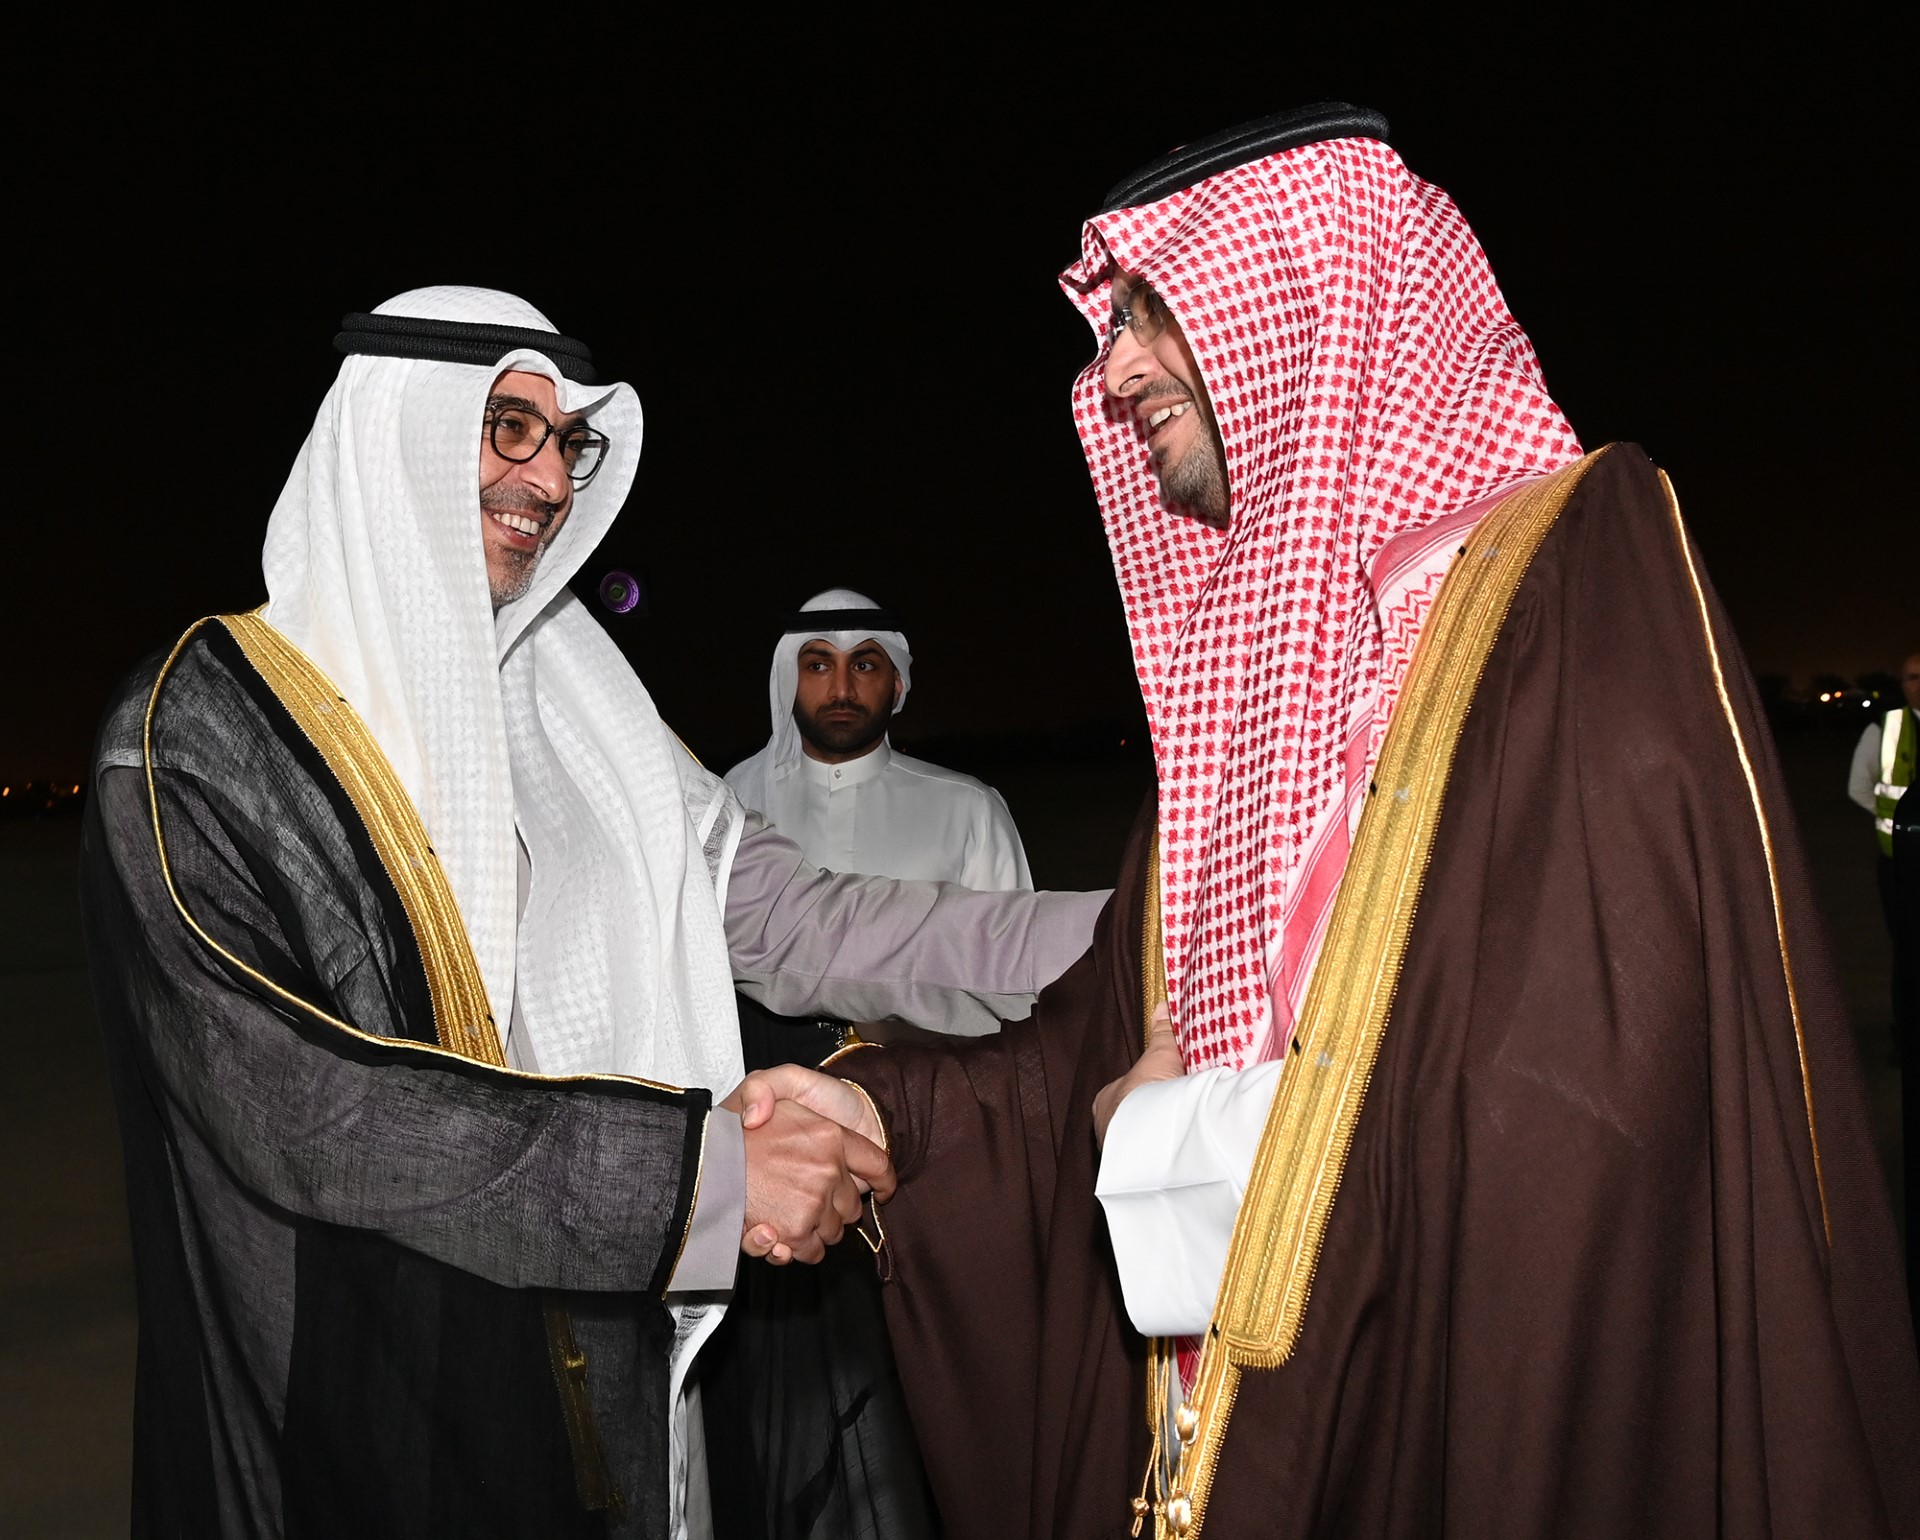 وزير الدولة عضو مجلس الوزراء السعودي الأمير تركي بن محمد آل سعود يصل إلى البلاد في زيارة رسمية